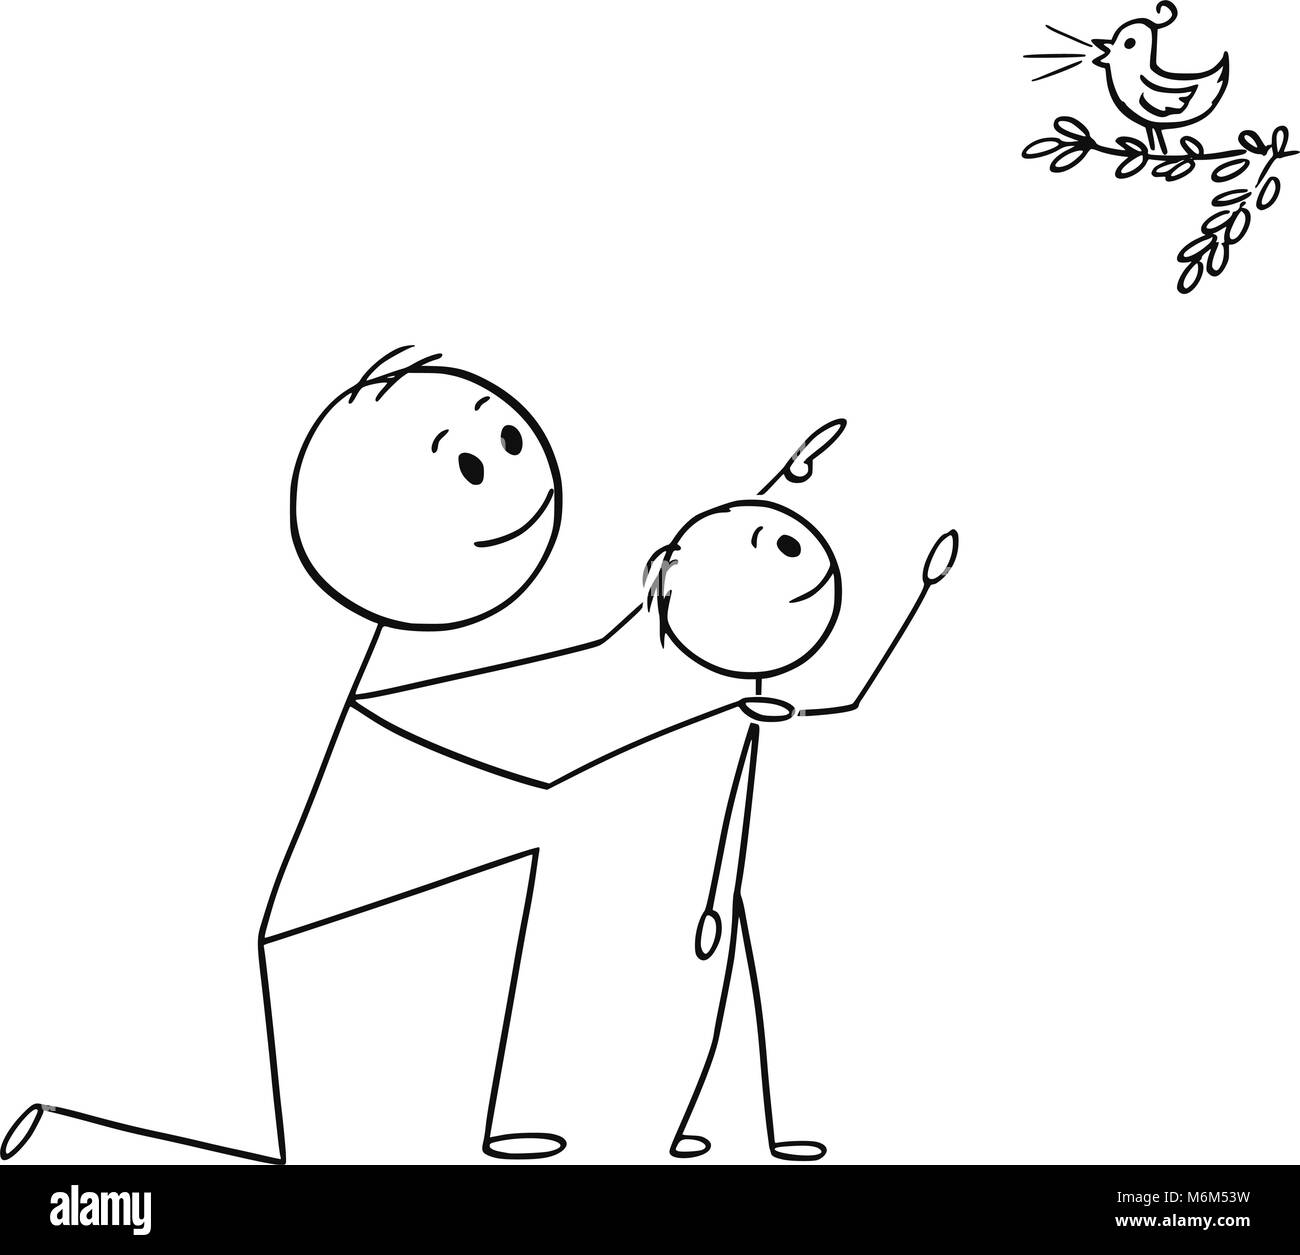 Caricatura de padre e hijo viendo un ave silvestre en la naturaleza Ilustración del Vector